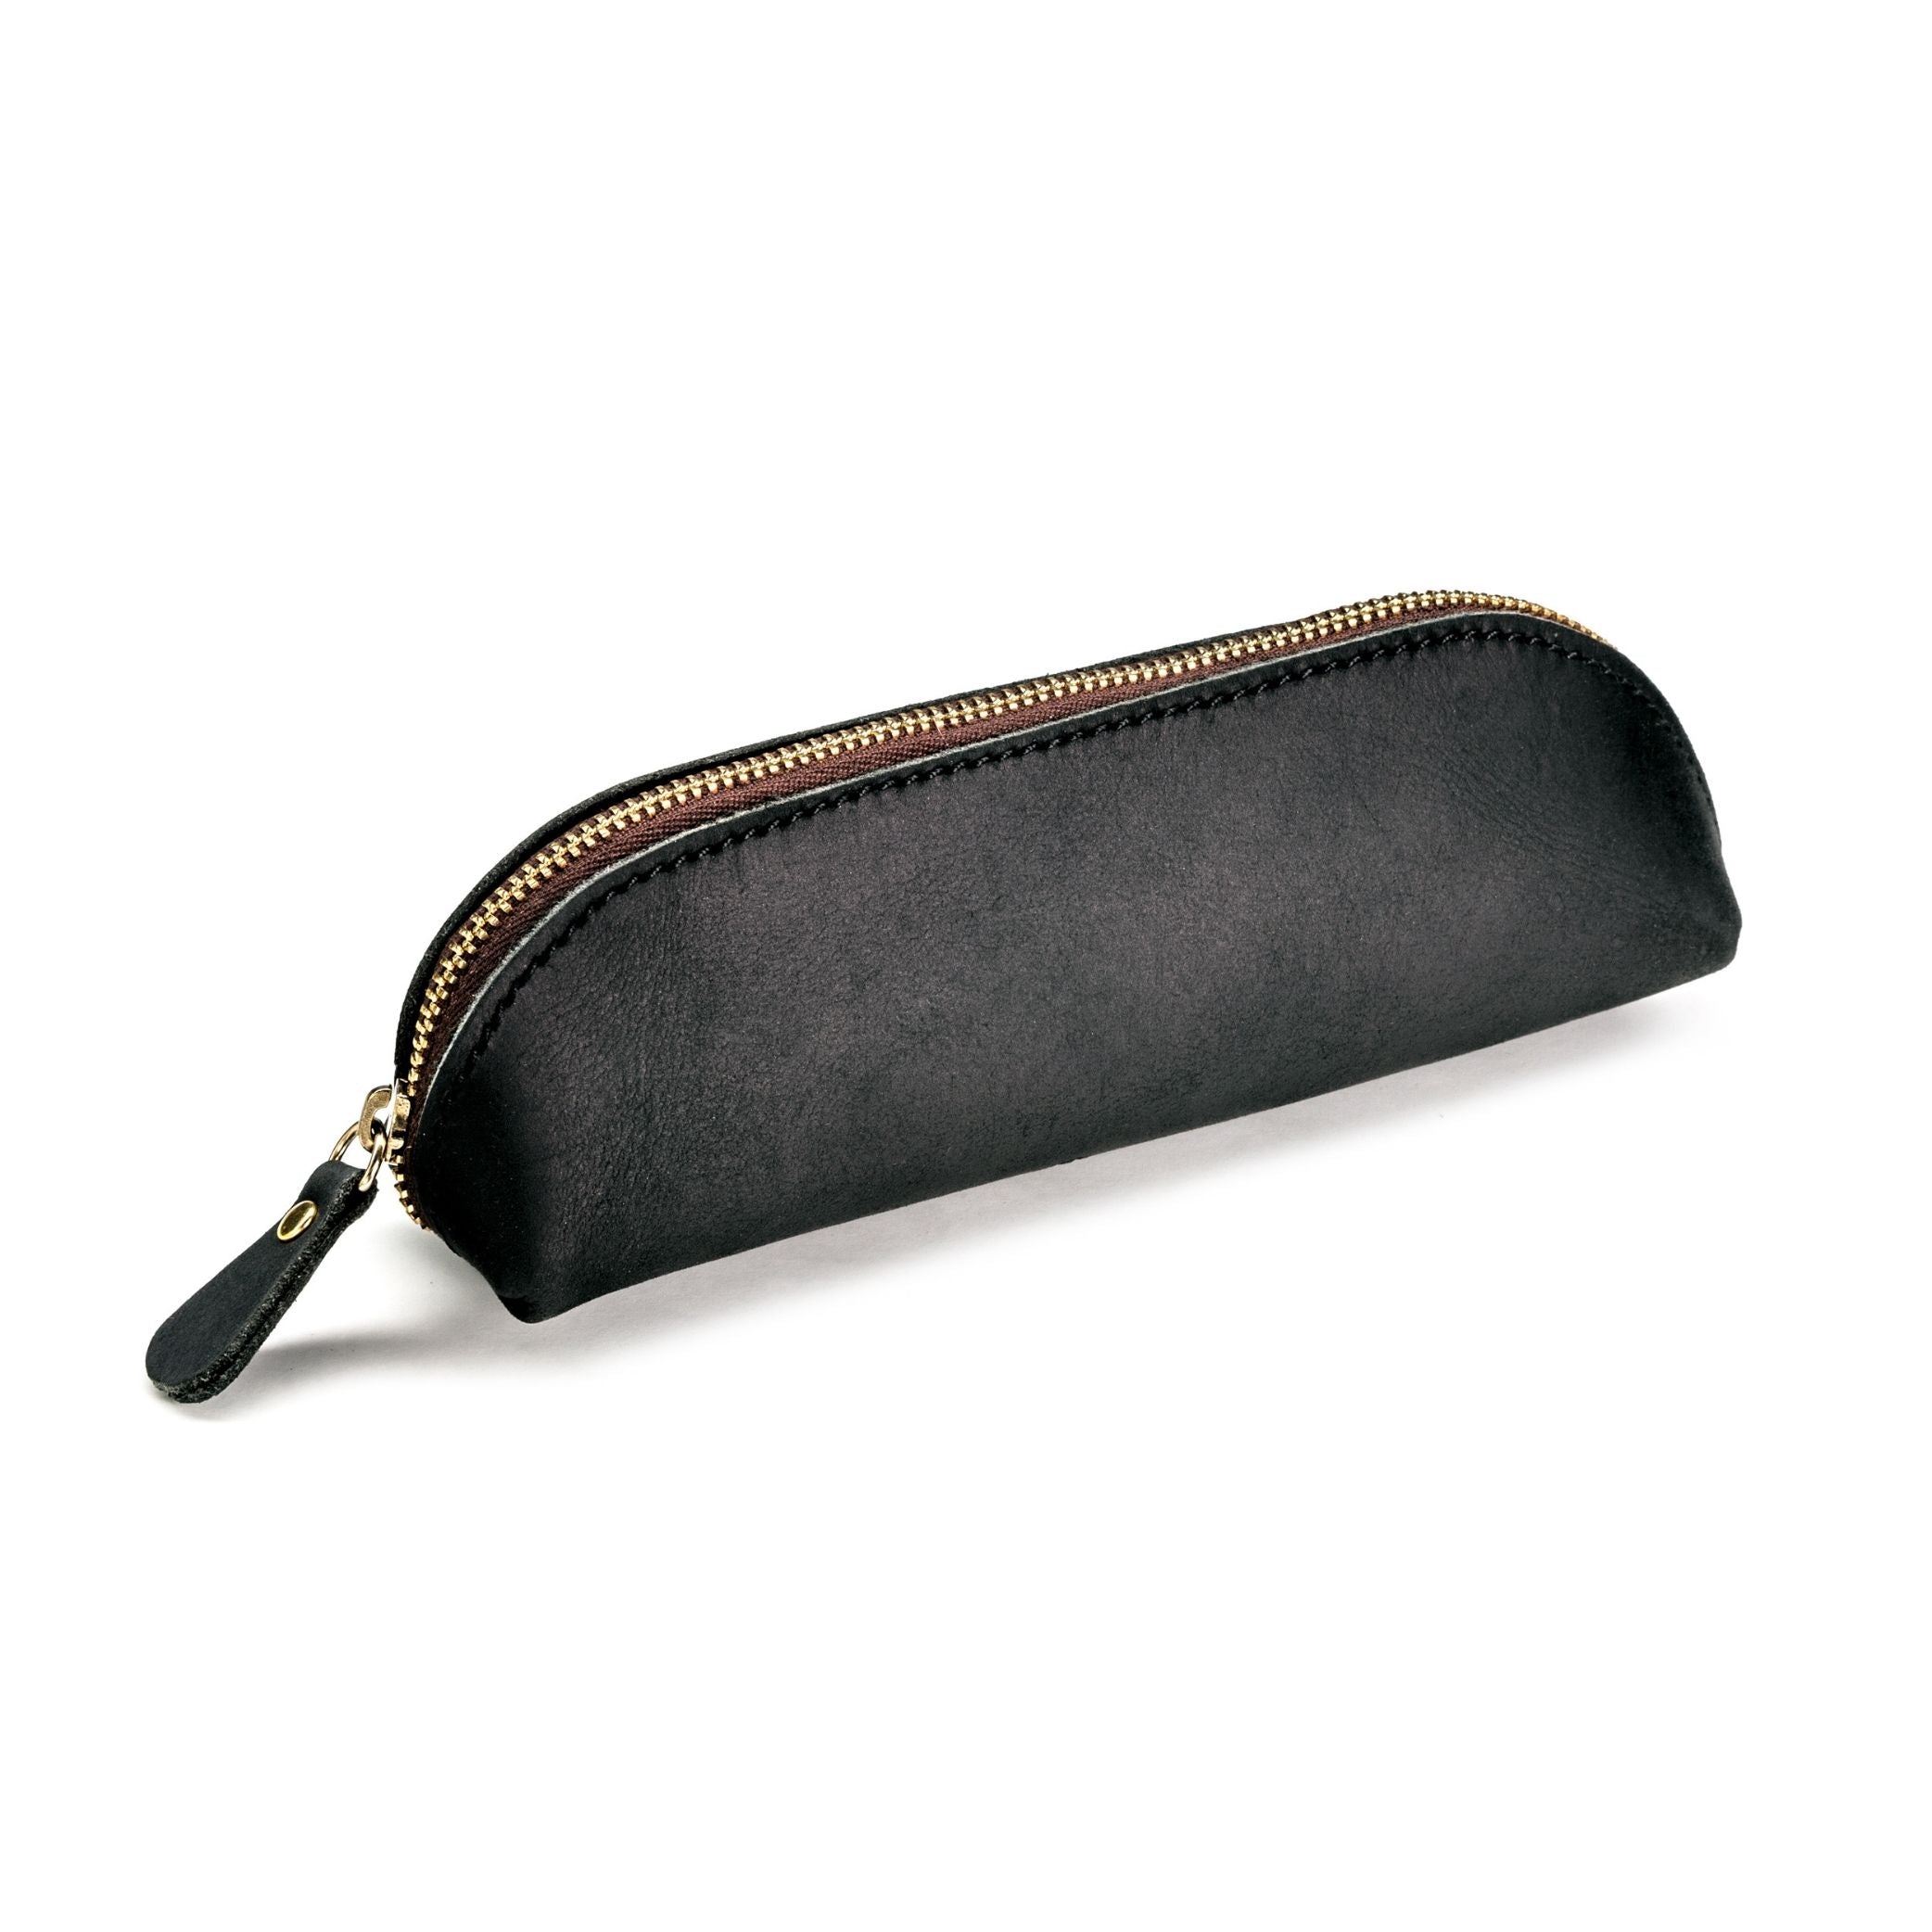 Black Pencil case / Leather Pencil holder / Makeup bag / Pen pouch - Shop  Pursful Pencil Cases - Pinkoi